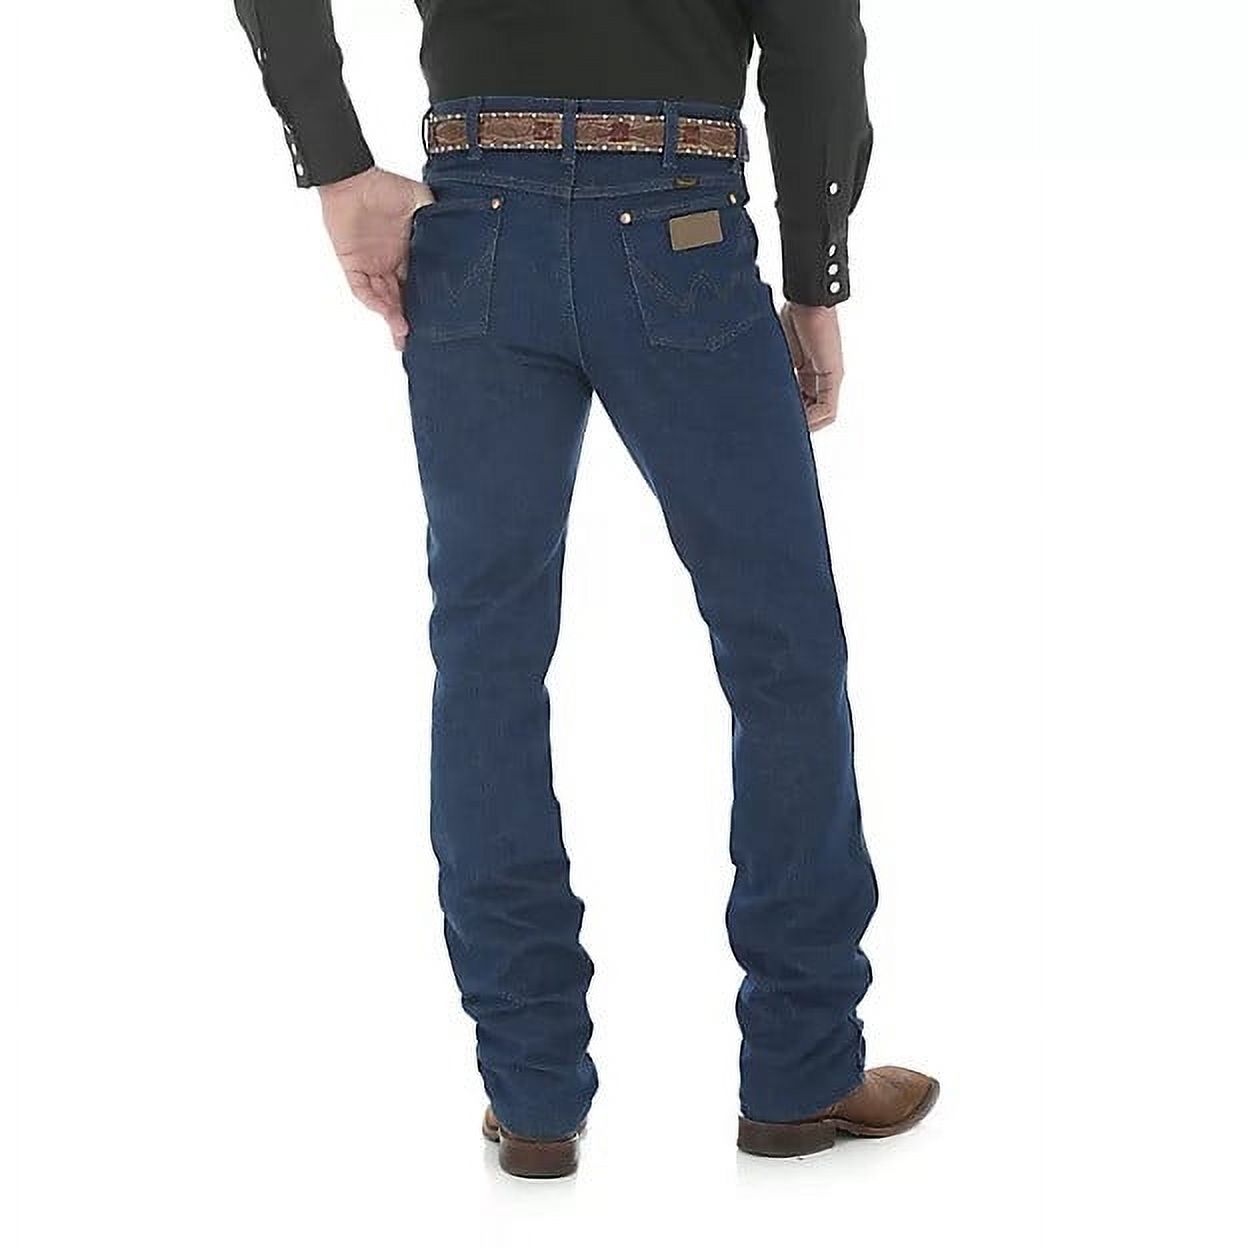 Wrangler Mens 0936 Cowboy Cut Slim Fit Jean - image 1 of 2